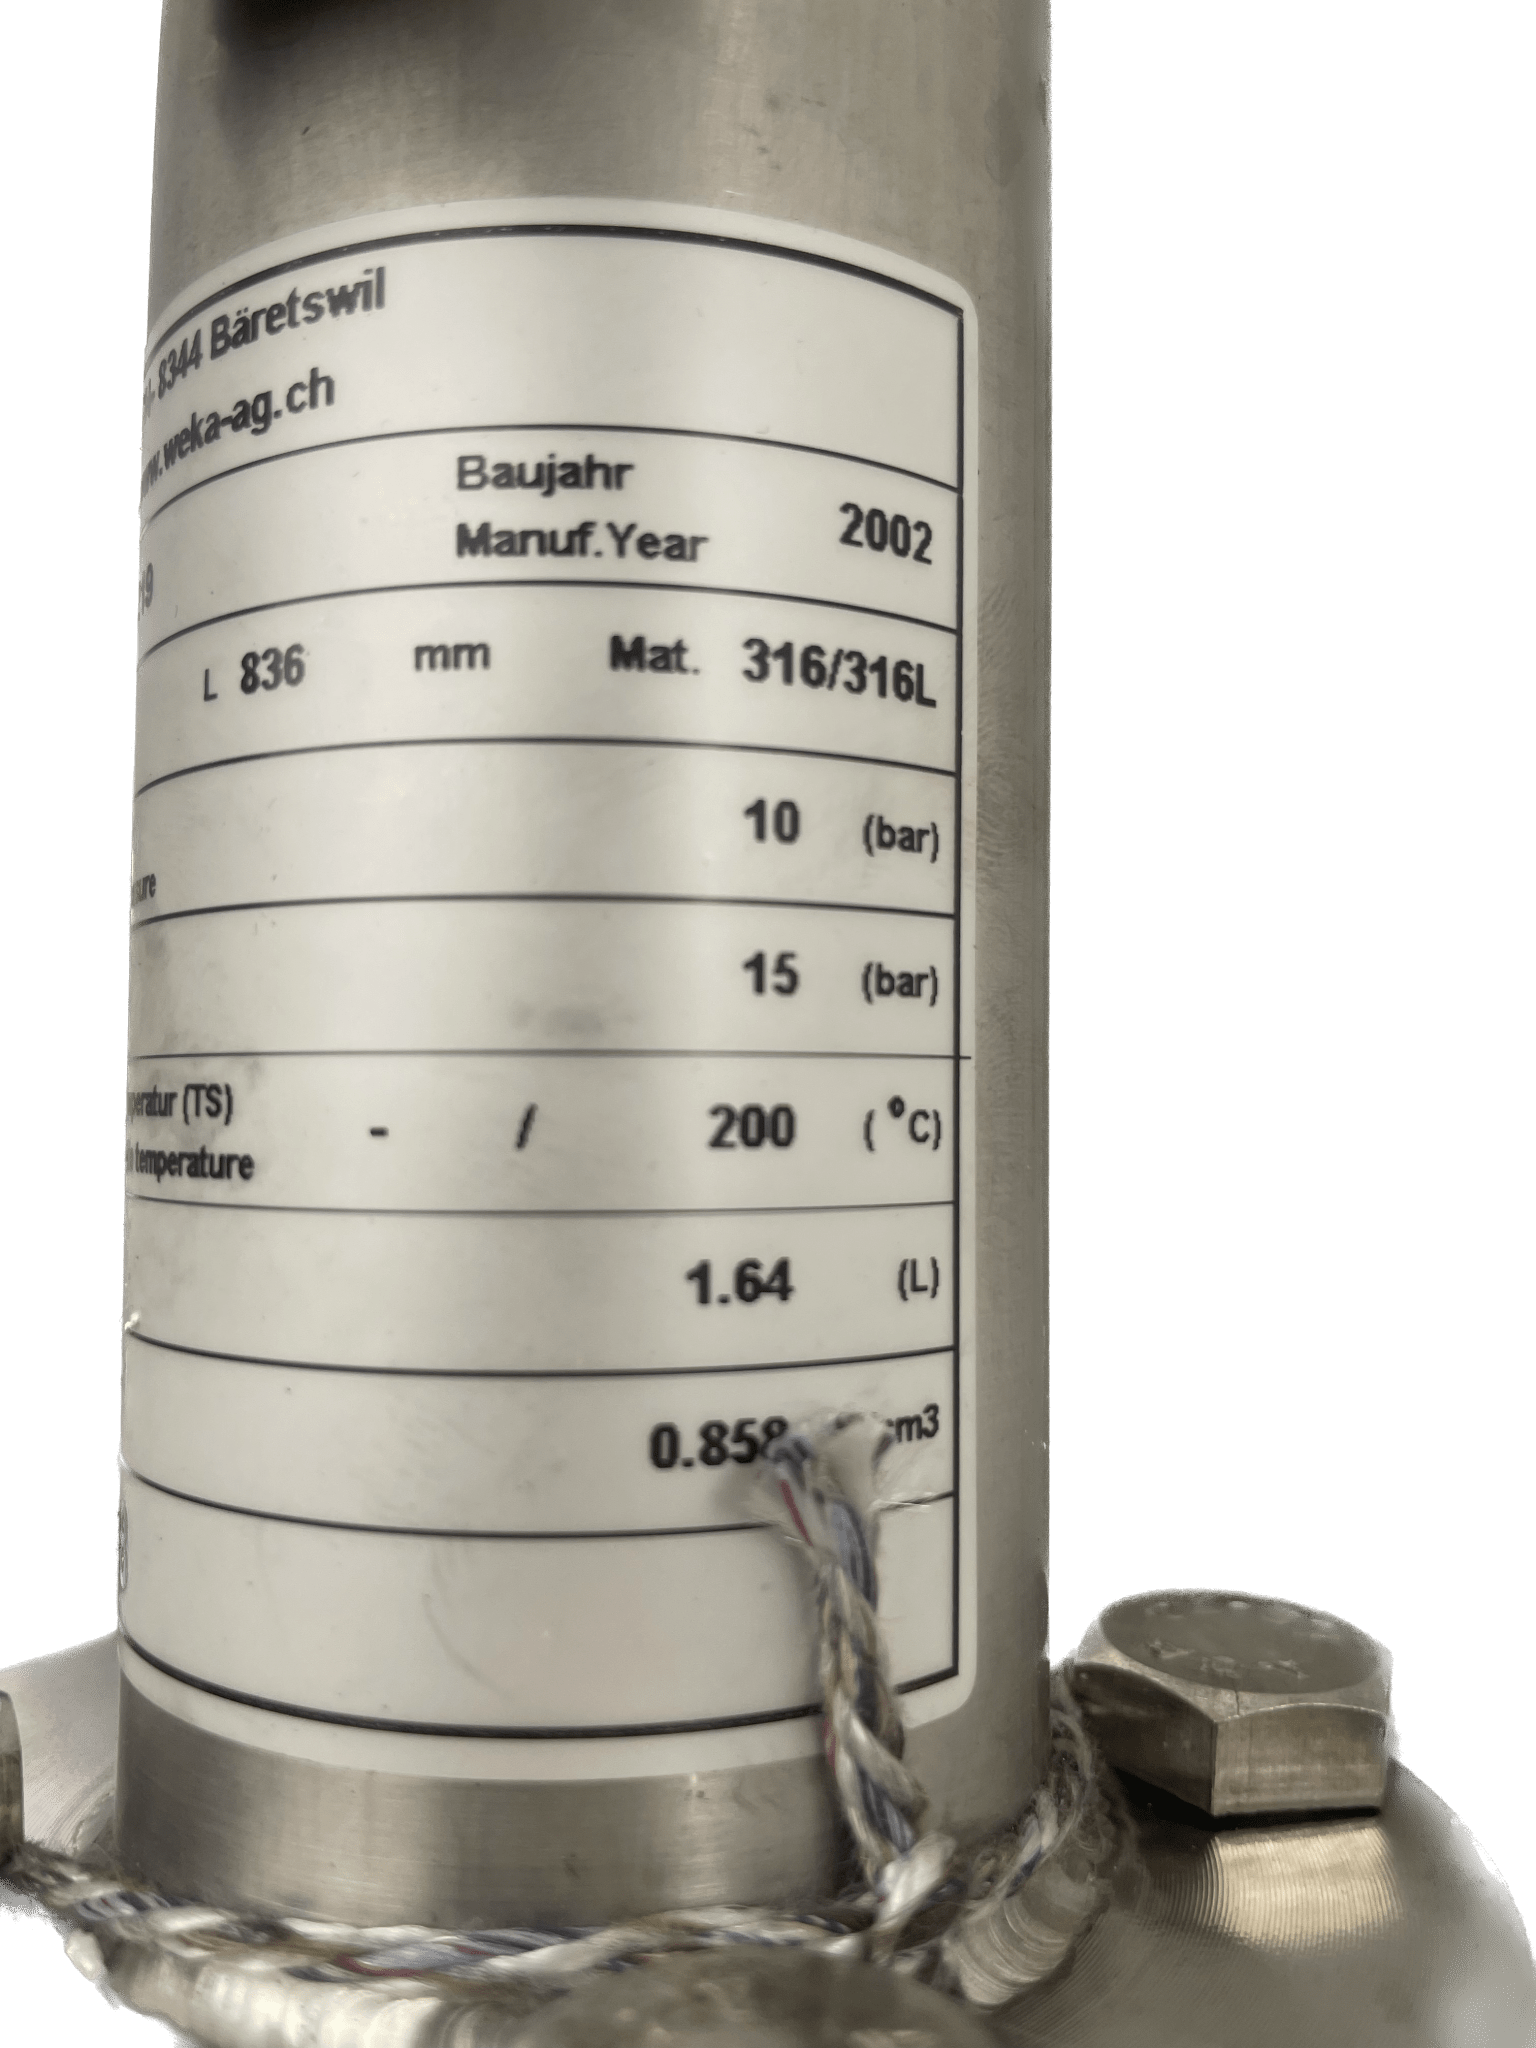 Weka AG Magnet-Niveauanzeiger für Drücke 154219 TYP 34300-A - #product_category# | Klenk Maschinenhandel